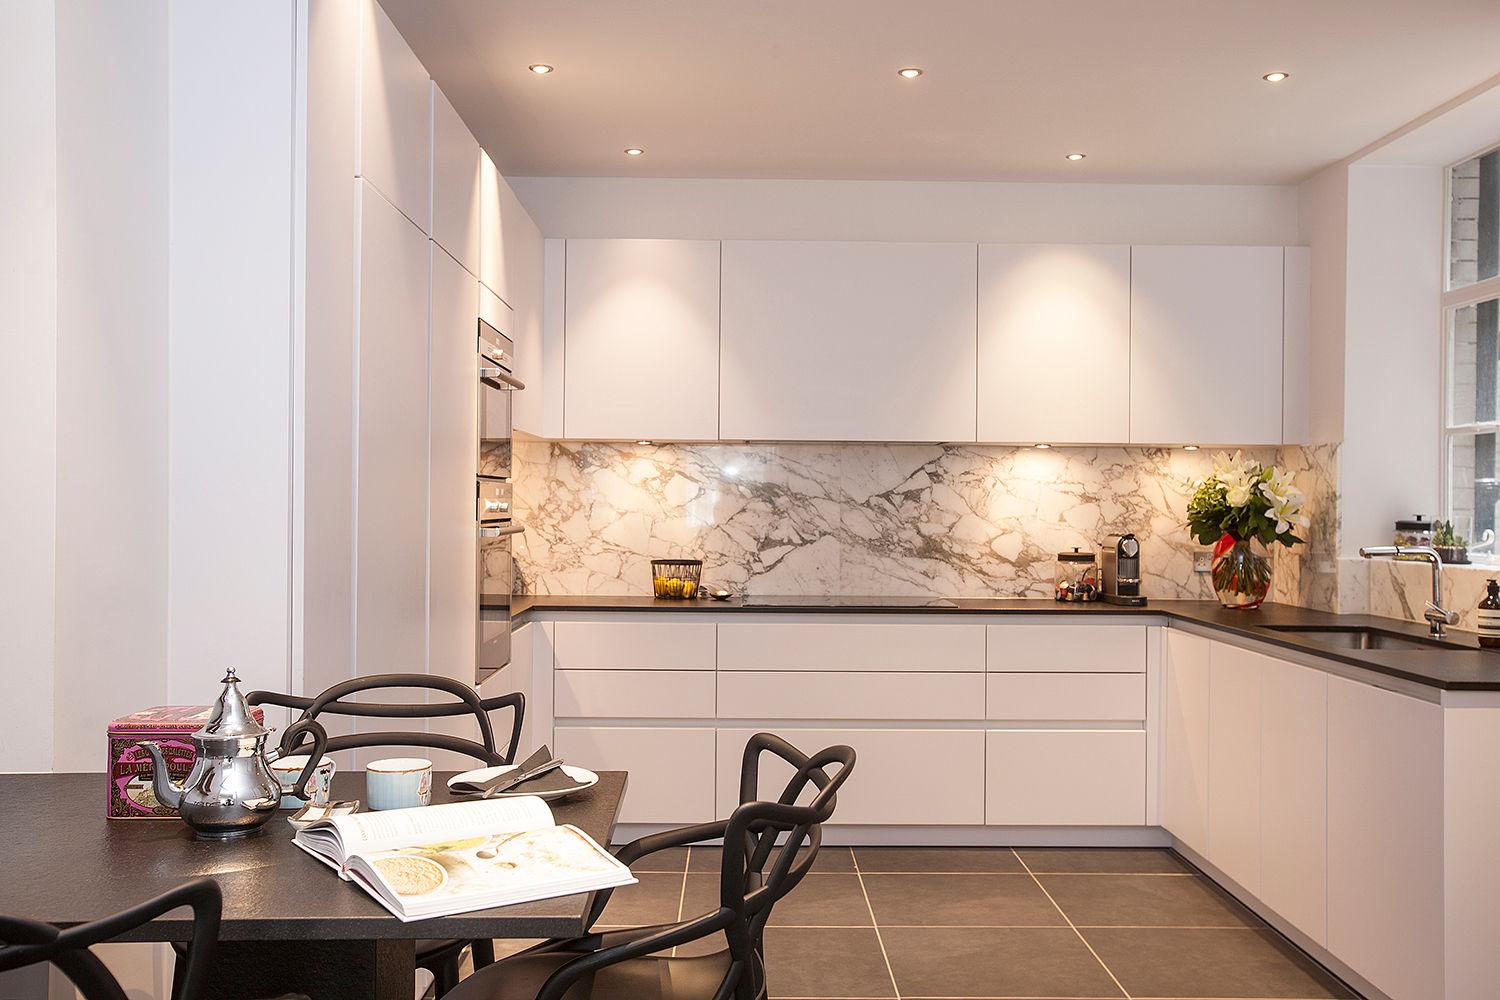 Kensington Church Street Kitchen - After SWM Interiors & Sourcing Ltd Cucina moderna